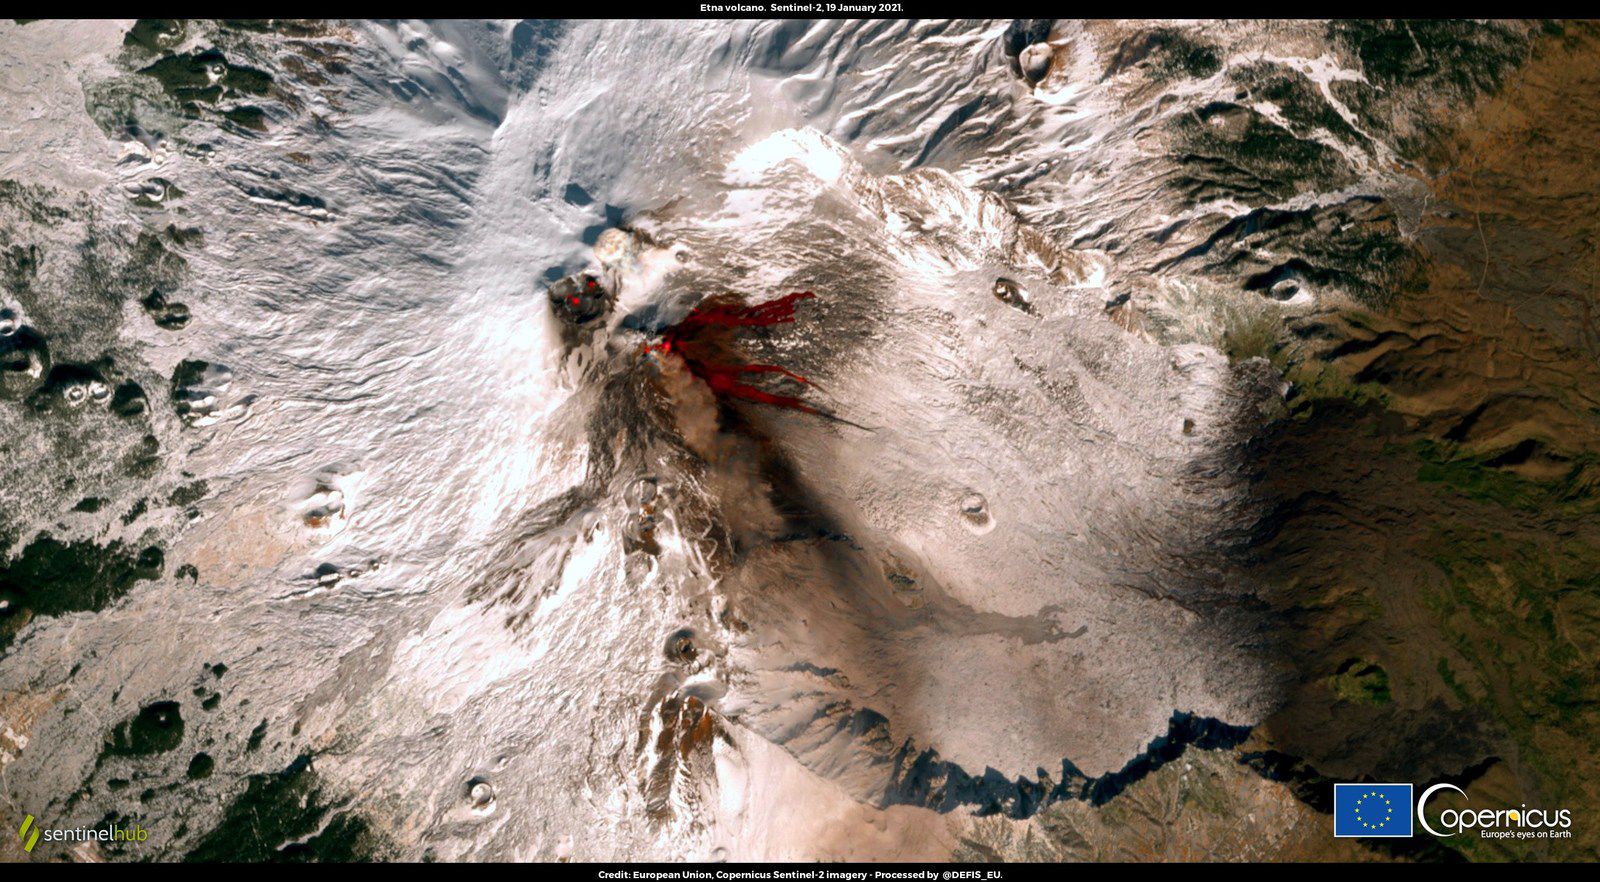  Etna - 19.01.2021 - contraste entre la couverture de neige et la lave  - image Sentinel -2 / CLMS High-Resolution Snow and Ice Monitoring - un clic pour agrandir